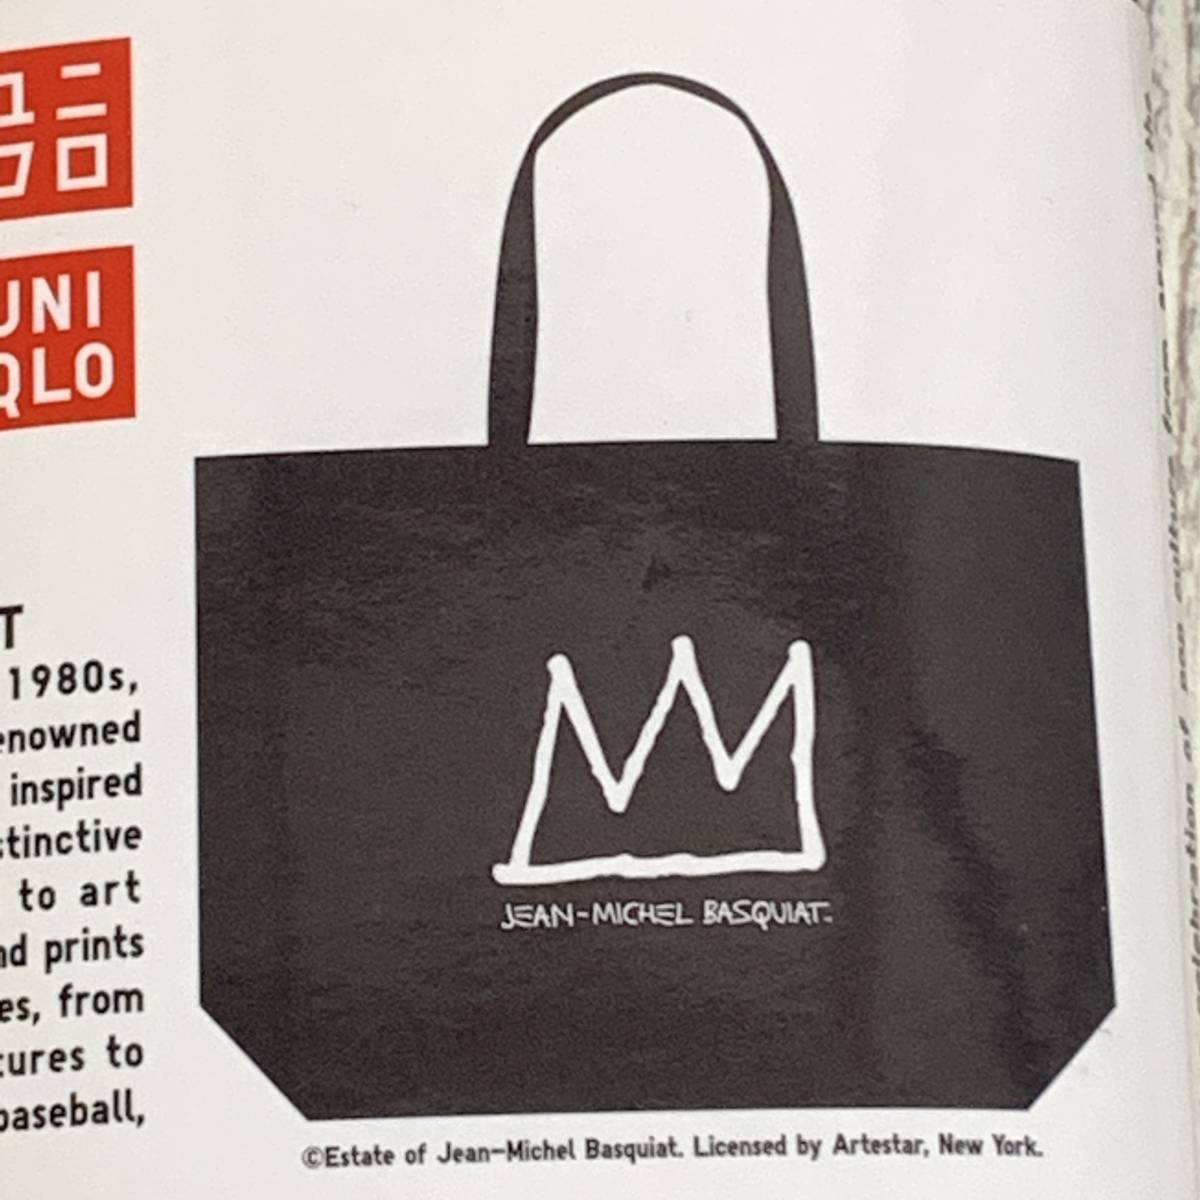 UNIQLO( Uniqlo ) - Jean = Michel * автобус Kia eko friend Lee принт сумка (L) эко-сумка большая сумка ( не использовался популярный полная распродажа товар )